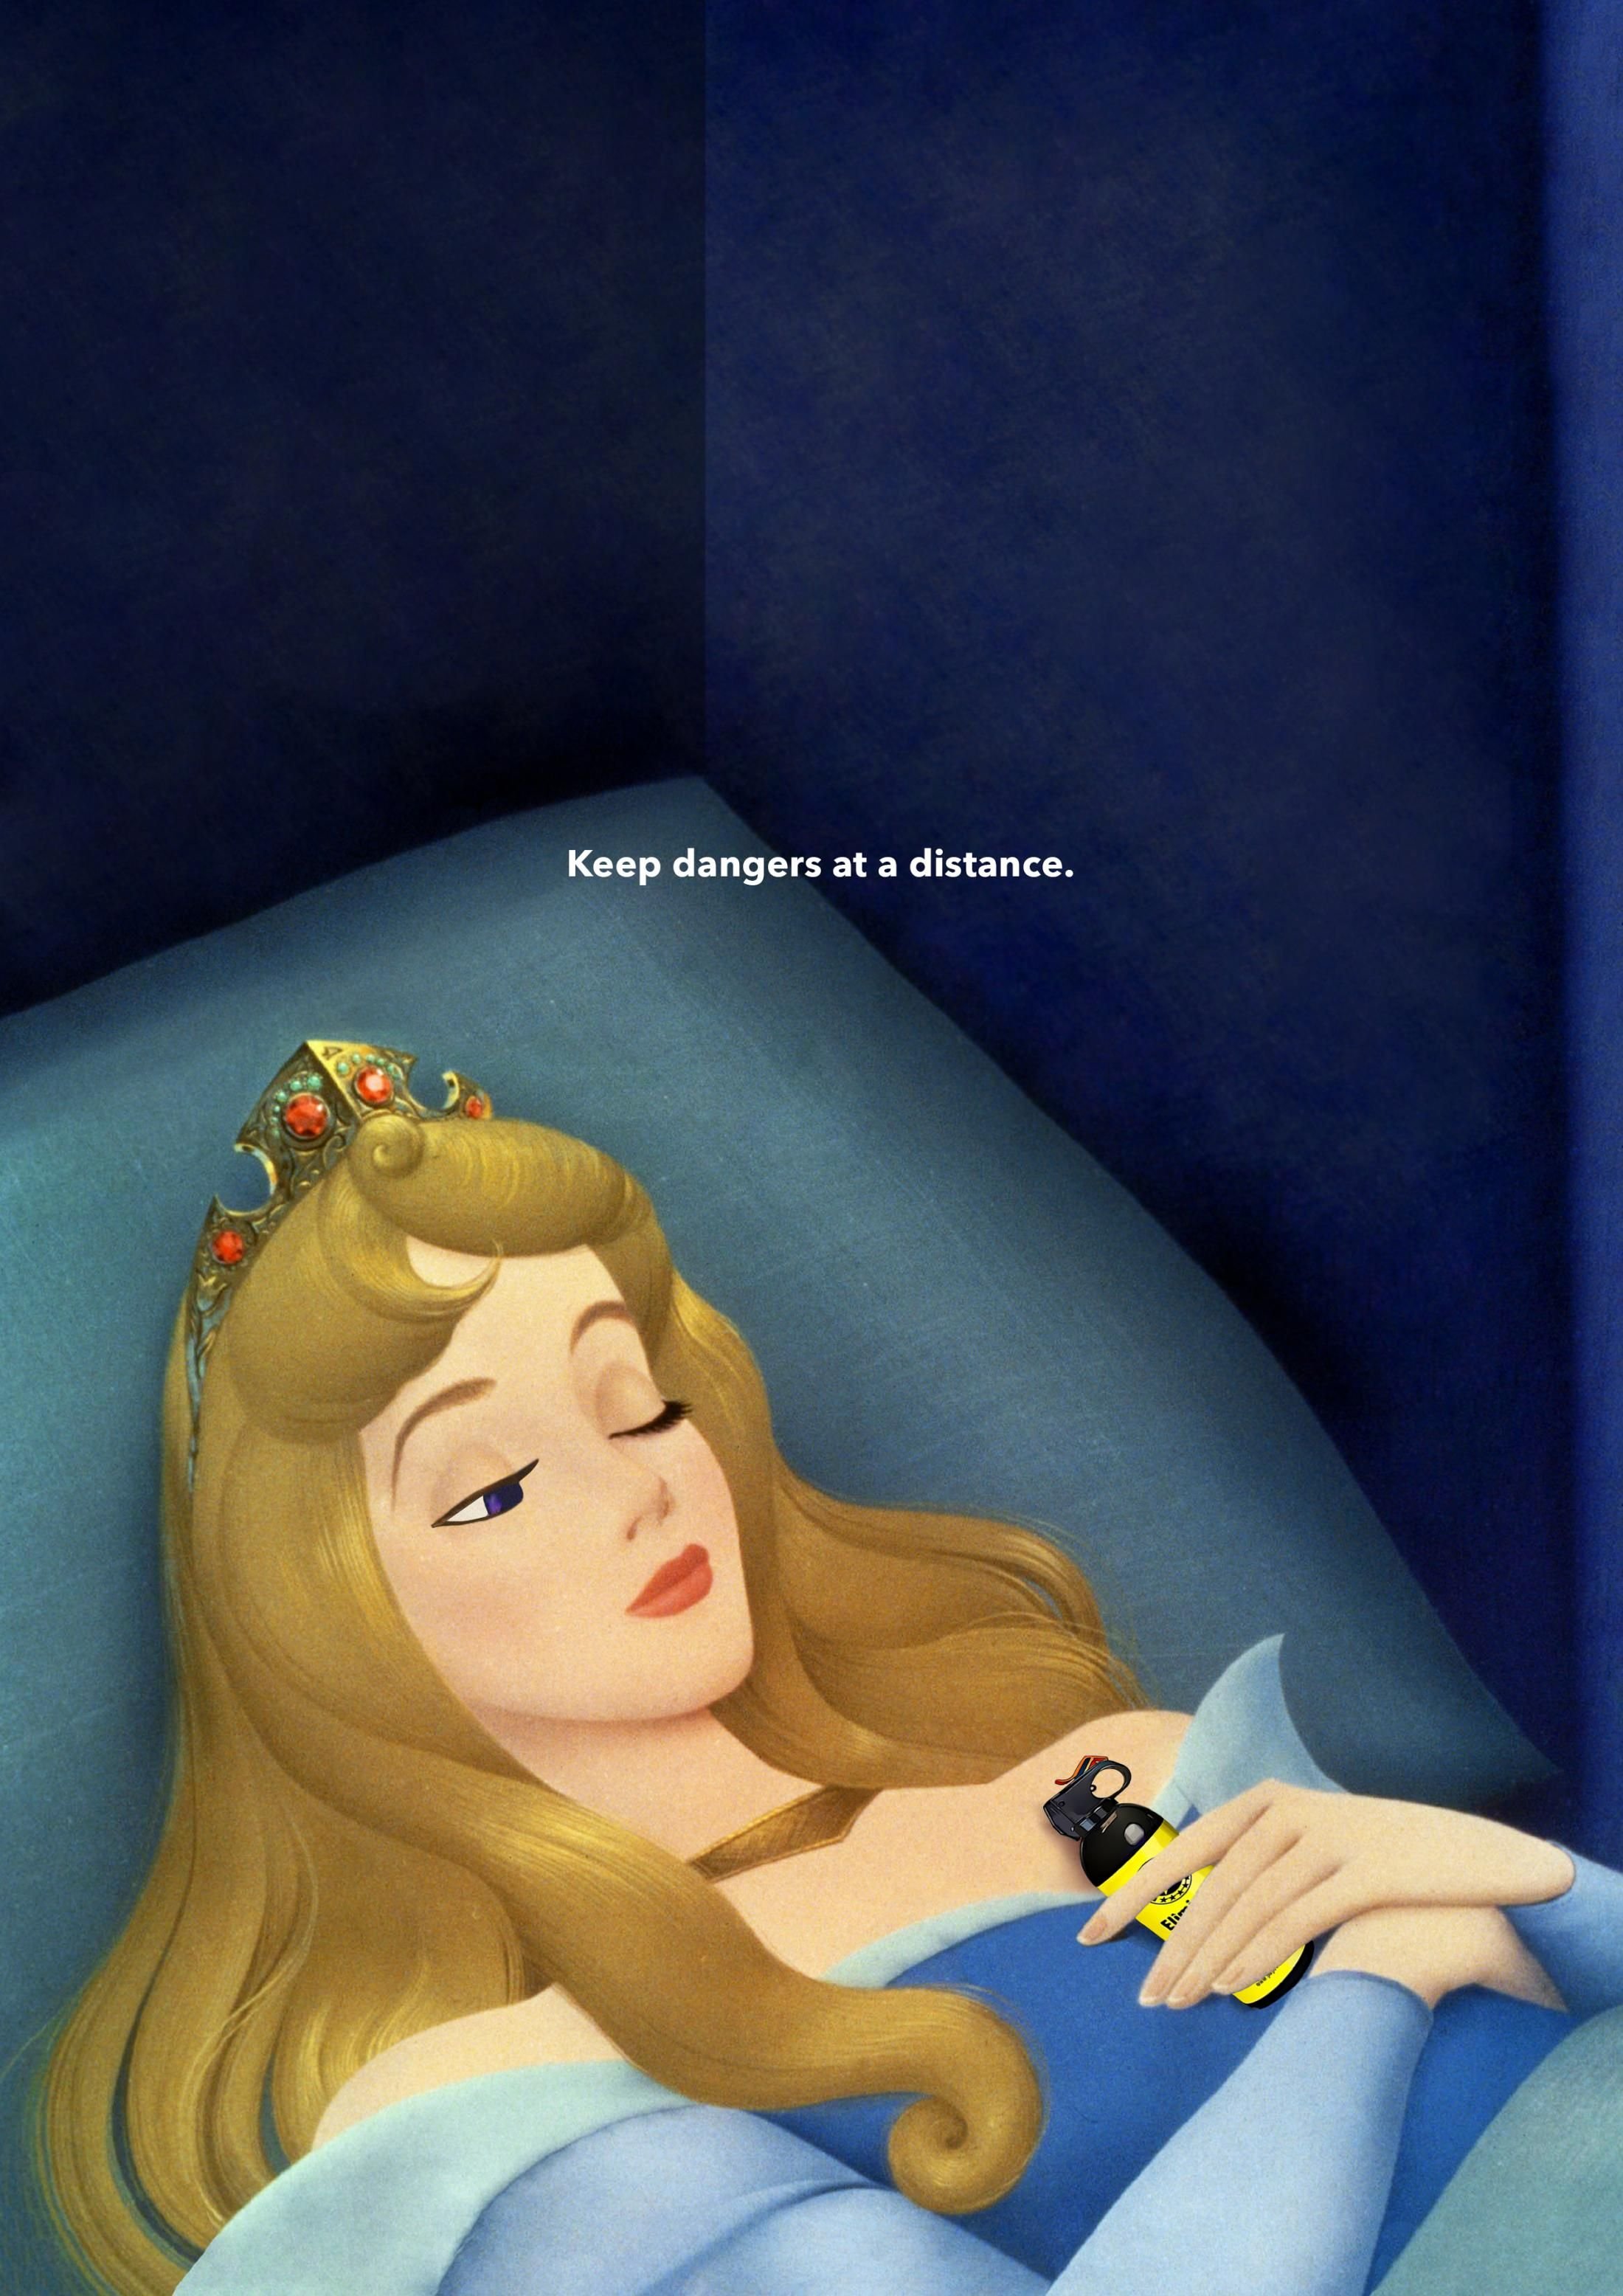 Иллюстрация по сказке спящая красавица 2 класс